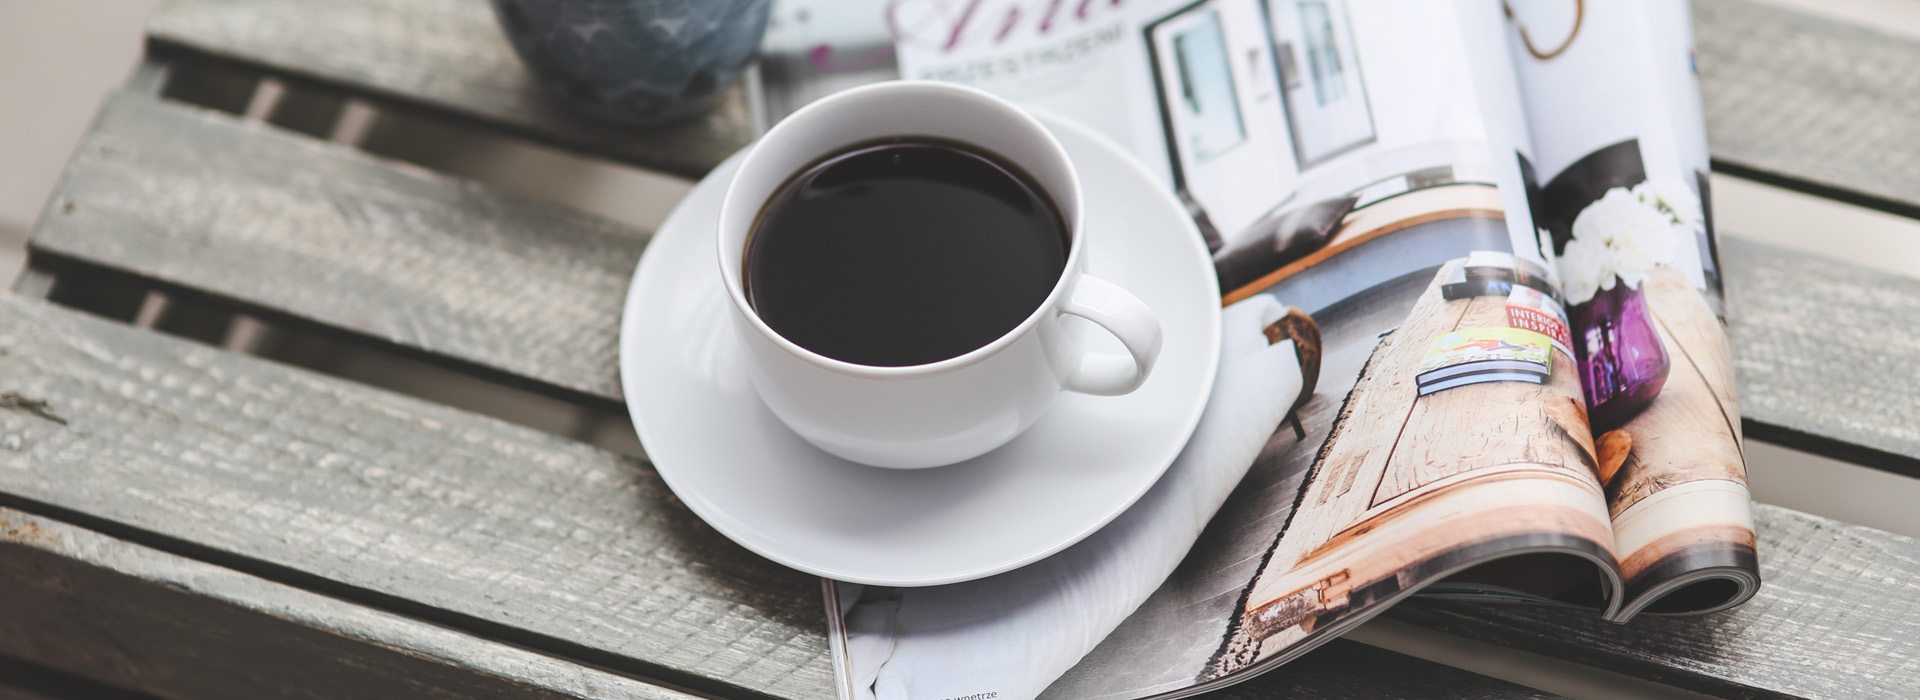 A képen egy magazin és egy csésze kávé látható egy asztalon.